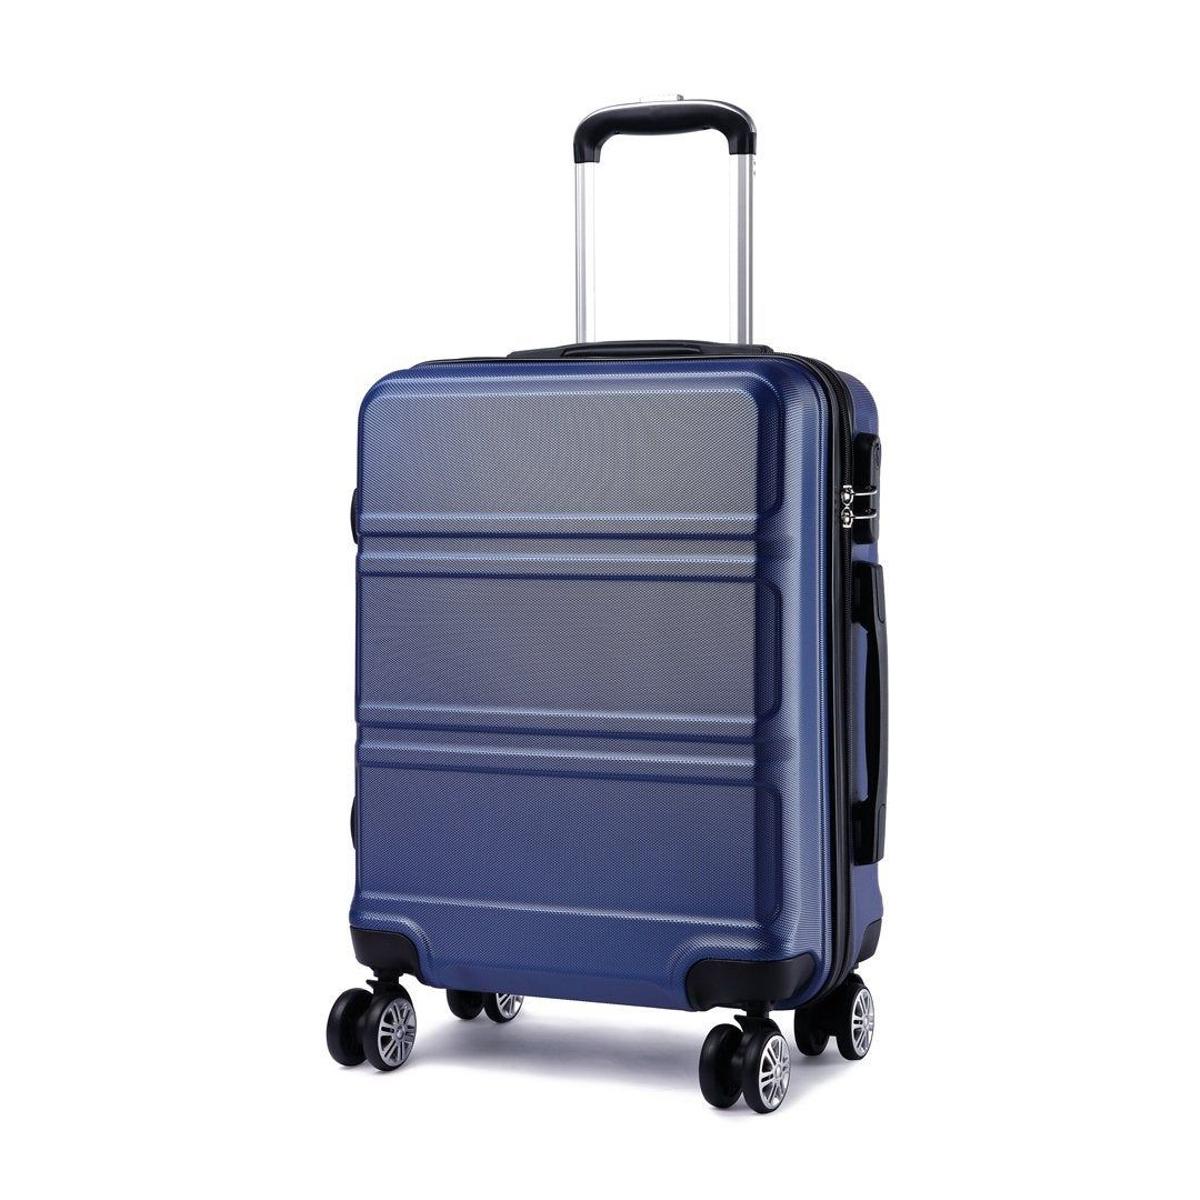 10 maletas que te harán más fácil hacer el equipaje - Stilo